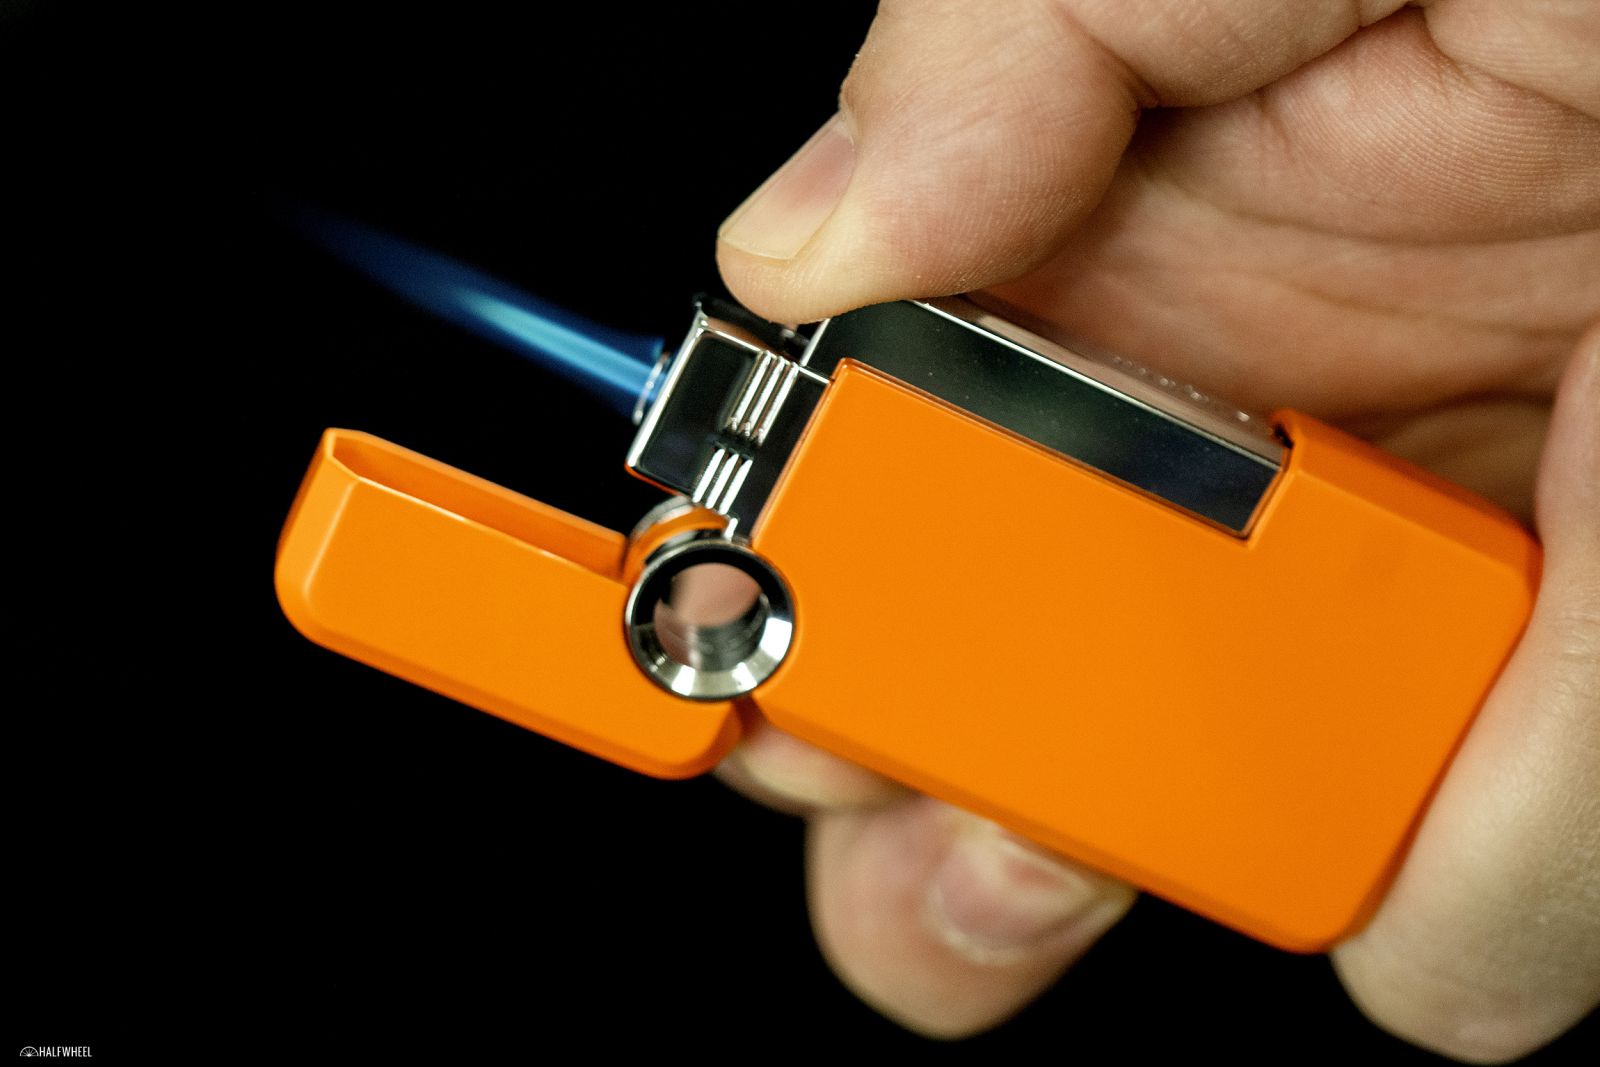 Hướng dẫn sử dụng bật lửa khò S.T Dupont Hooked lighter đúng cách